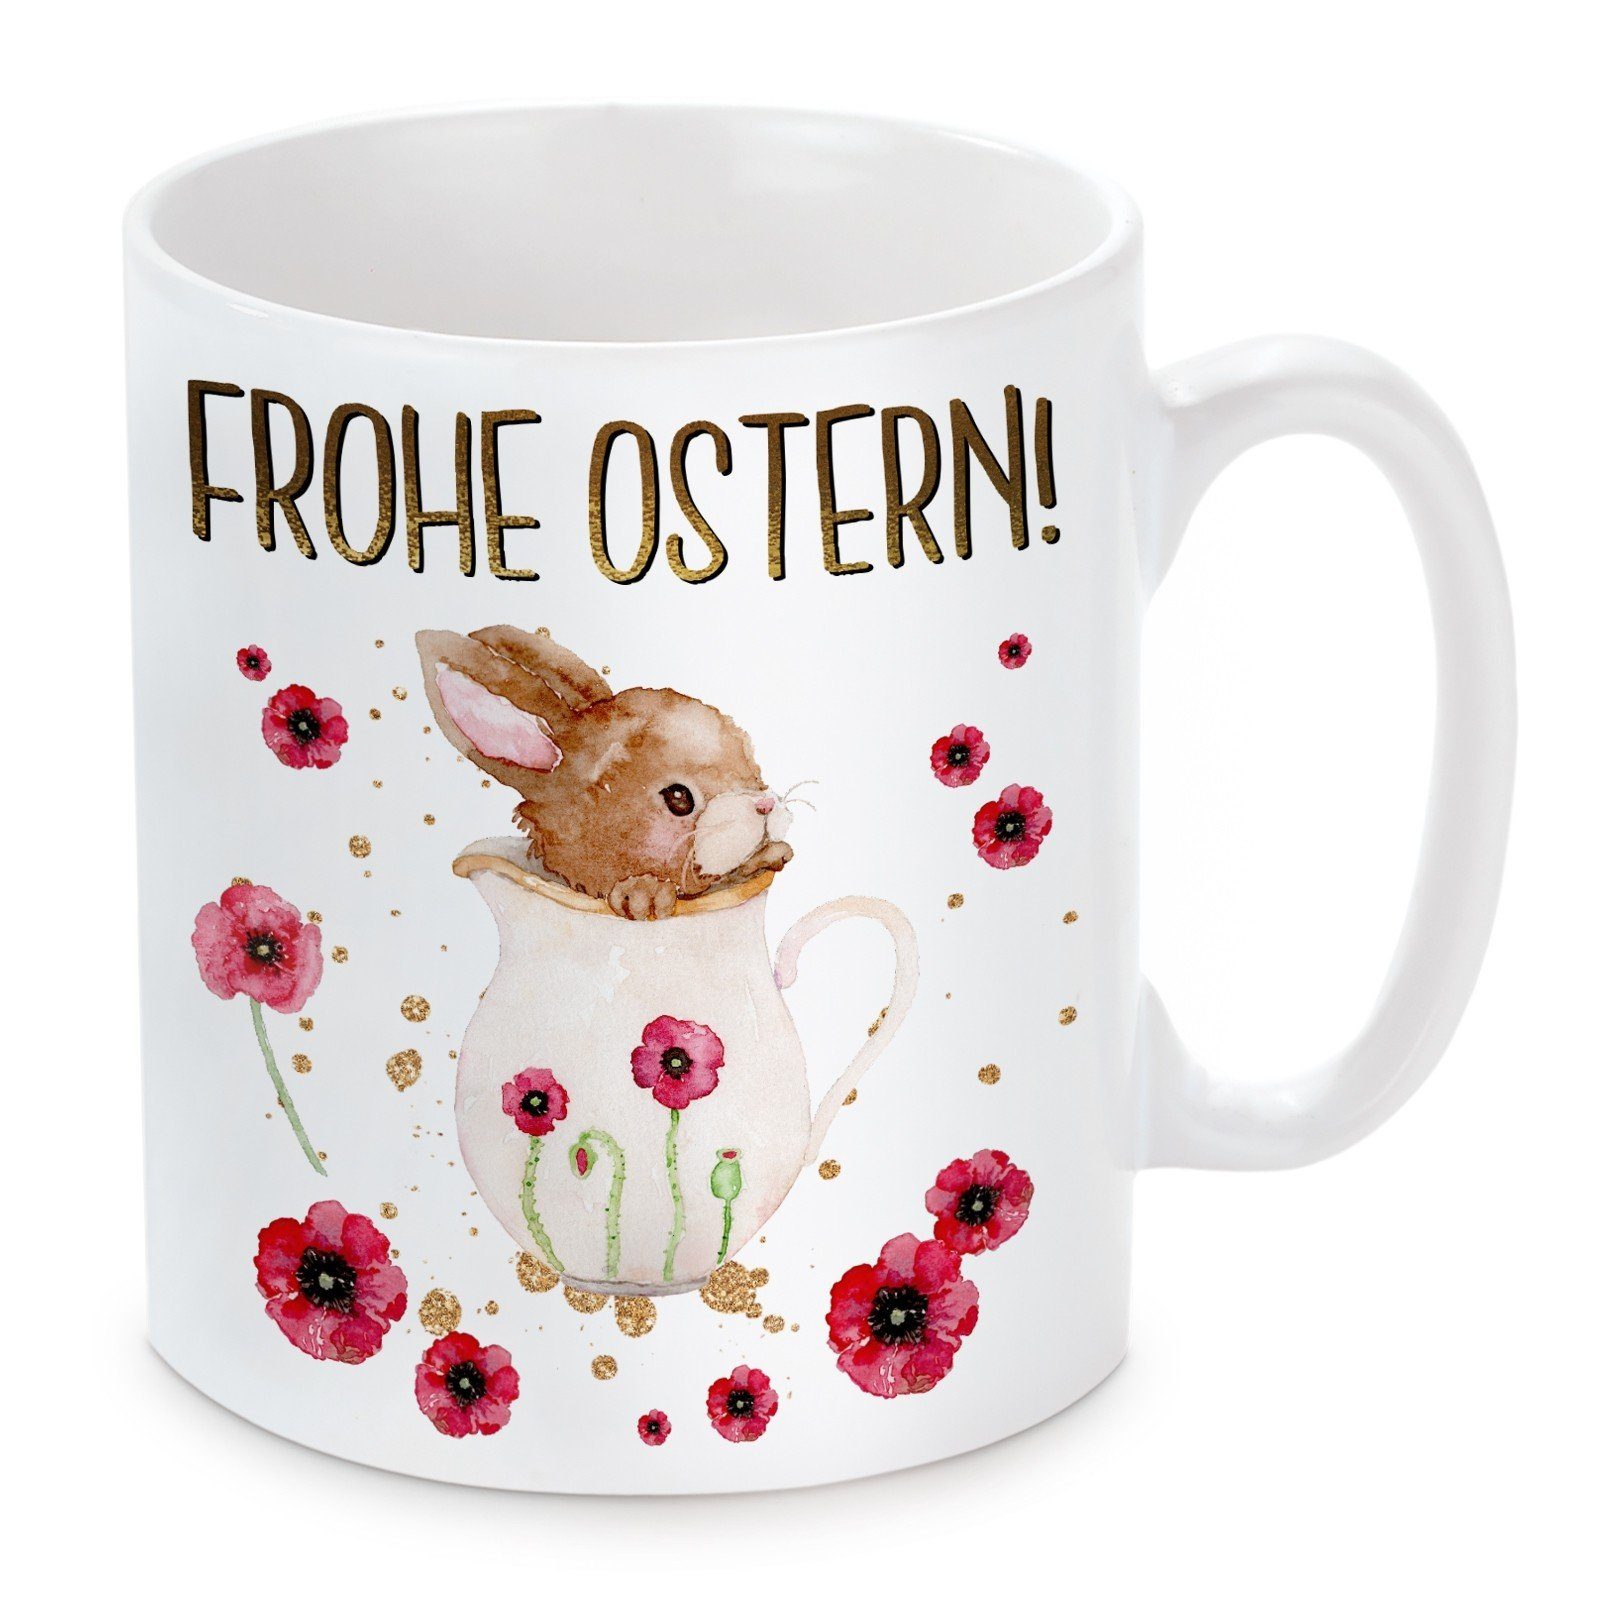 Herzbotschaft Tasse Kaffeebecher Keramik, Ostern!, Kaffeetasse Motiv Frohe mit spülmaschinenfest und mikrowellengeeignet